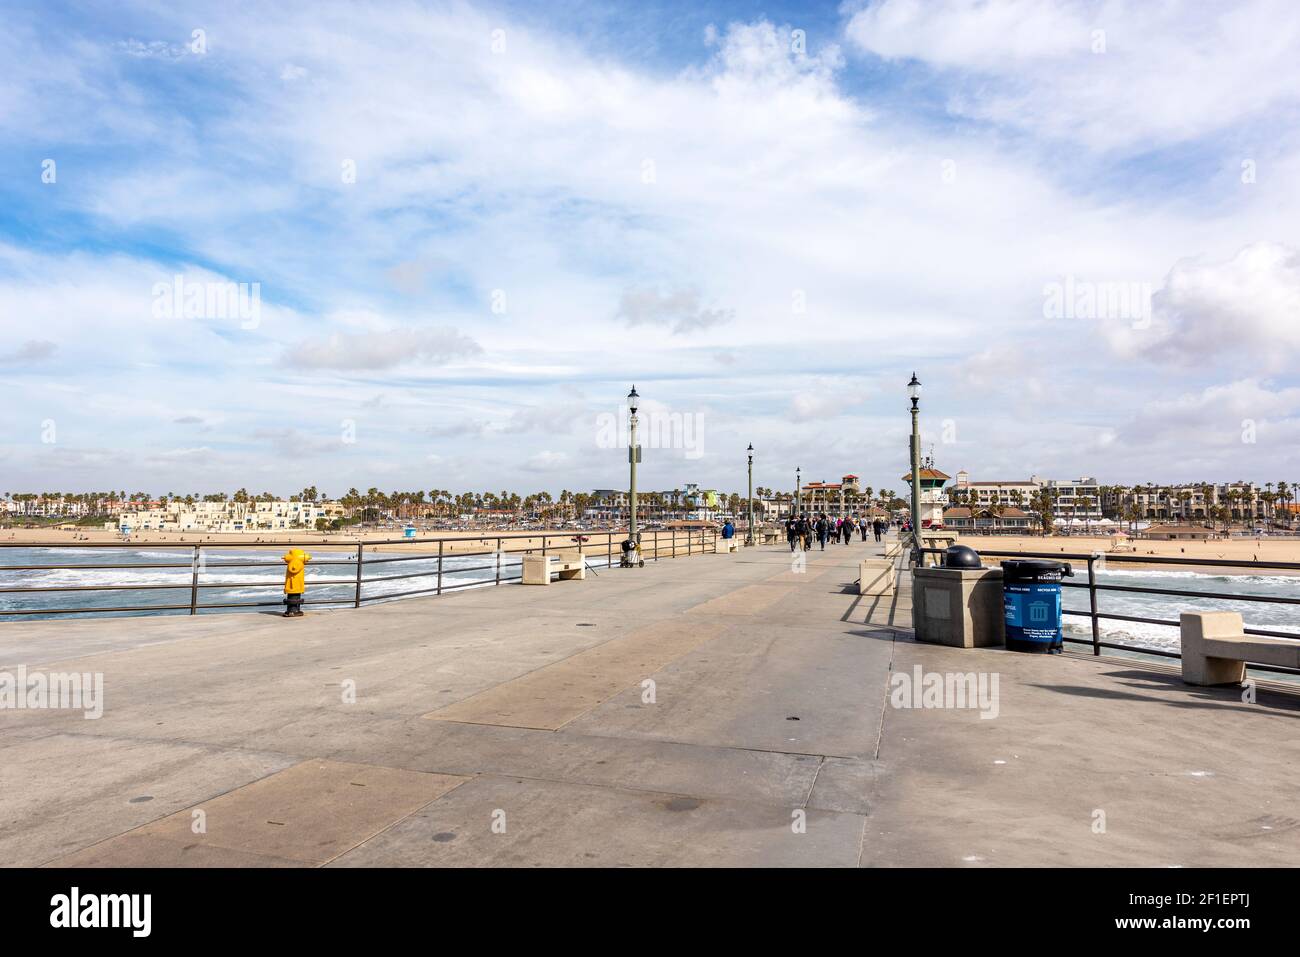 La piattaforma del molo di Huntington Beach che guarda verso la riva mostra le splendide viste che si possono vedere dall'alto in cima alla piattaforma. Foto Stock